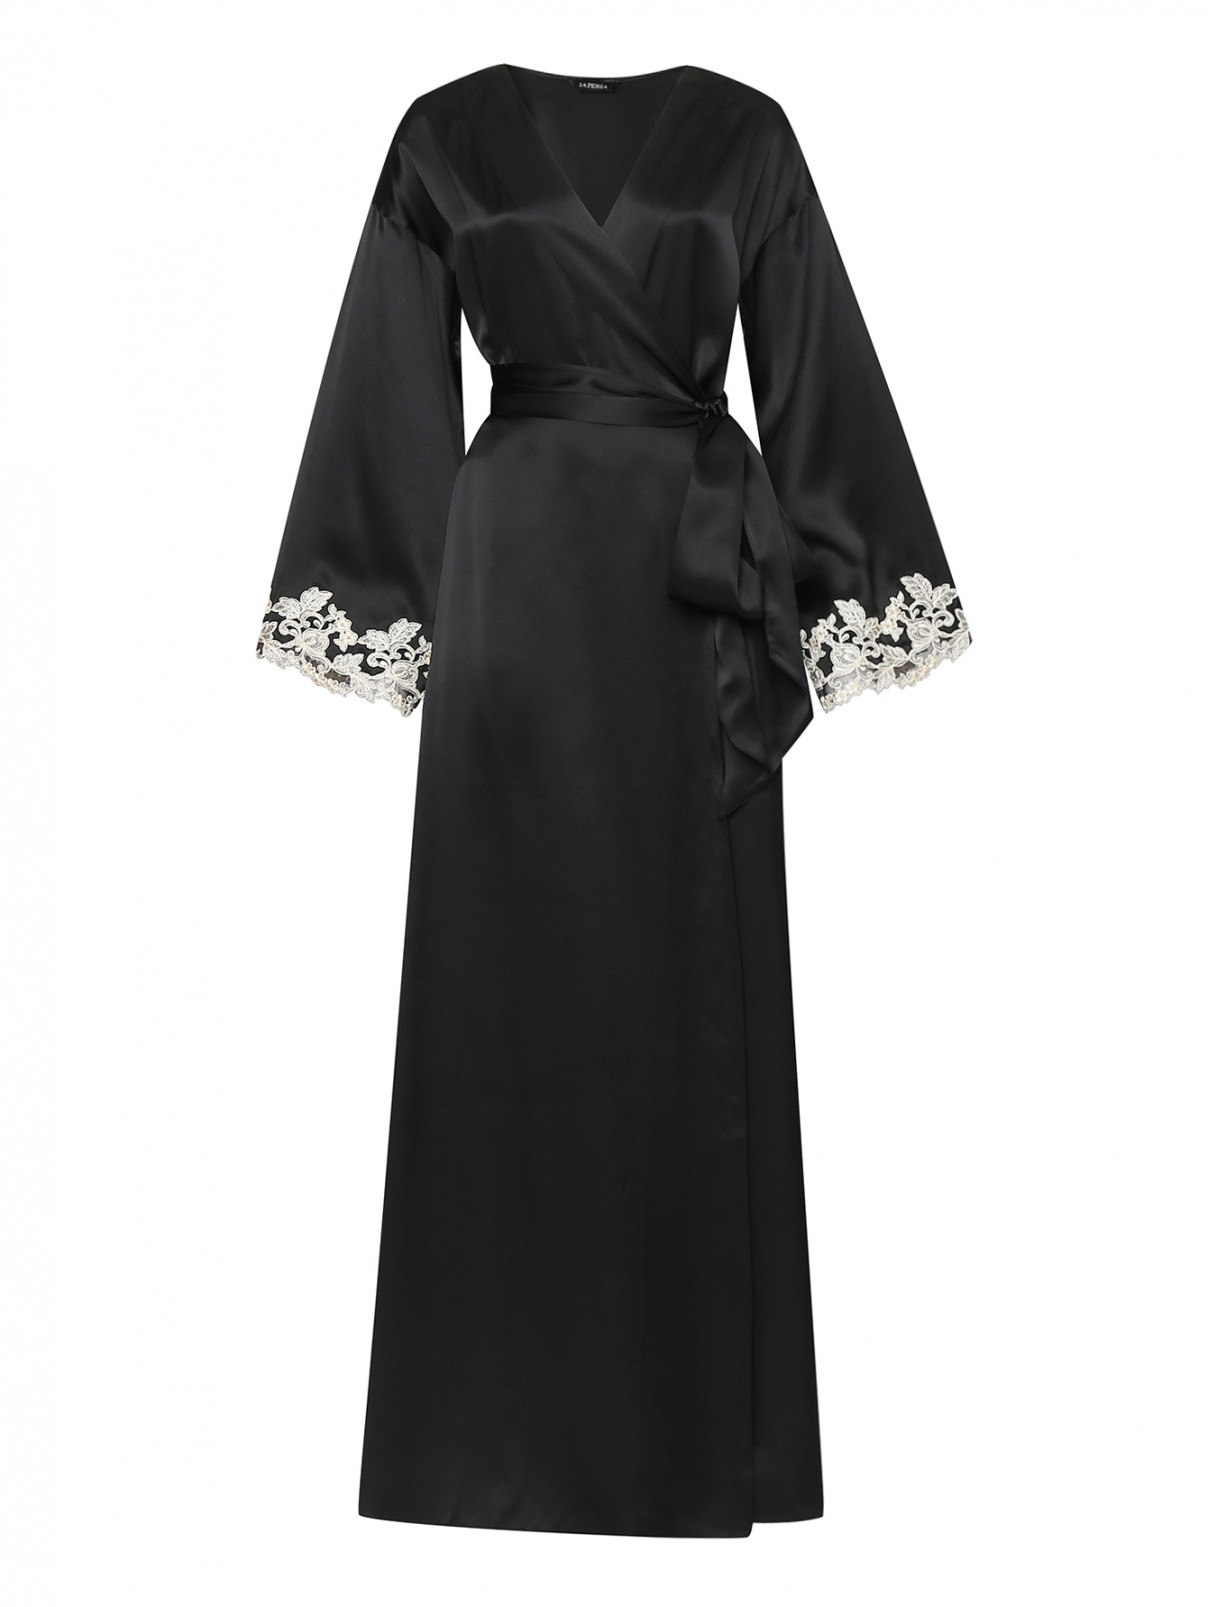 La Perla черный длинный халат из шелка декорированный кружевом (577003).Цена: 202 400 ₽